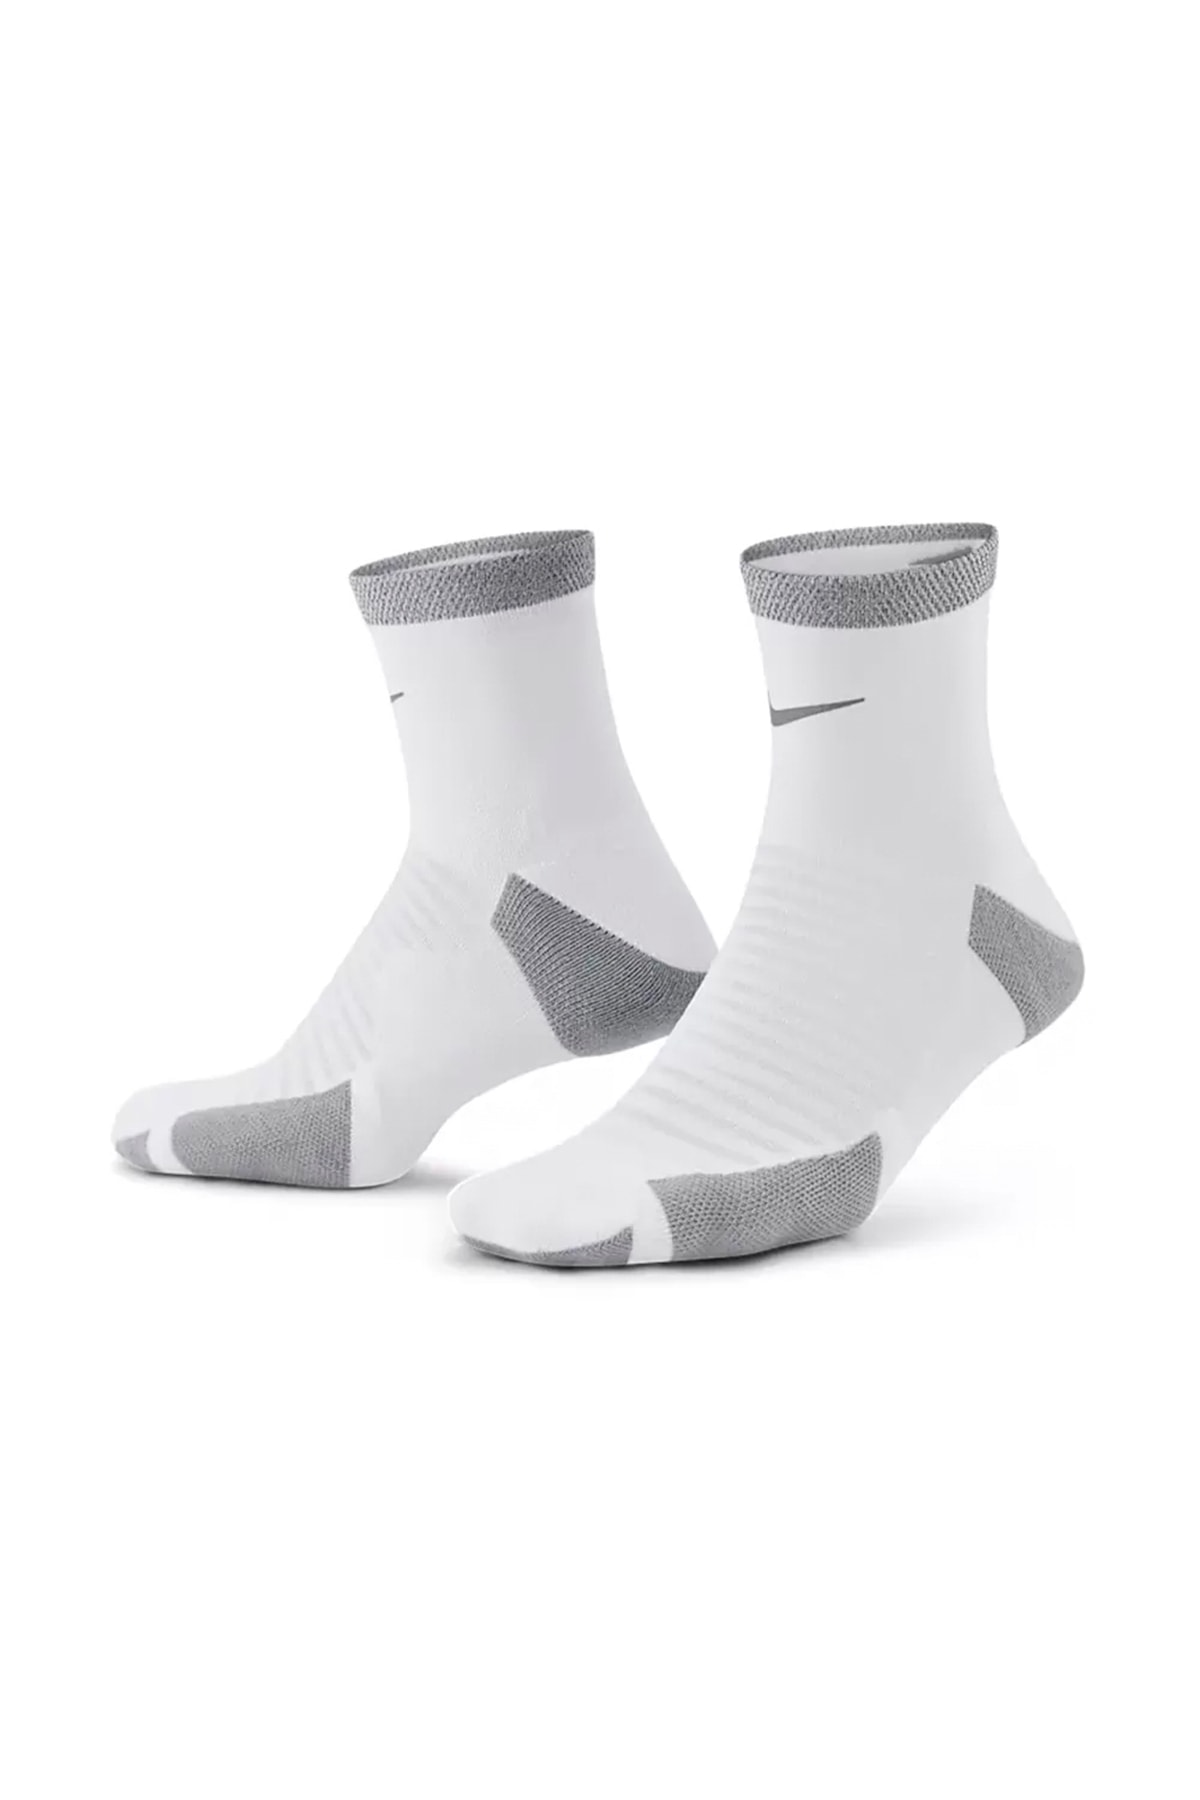 Nike Cu7199-100 Spark Yastıklamalı Bilekli Koşu Çorabı